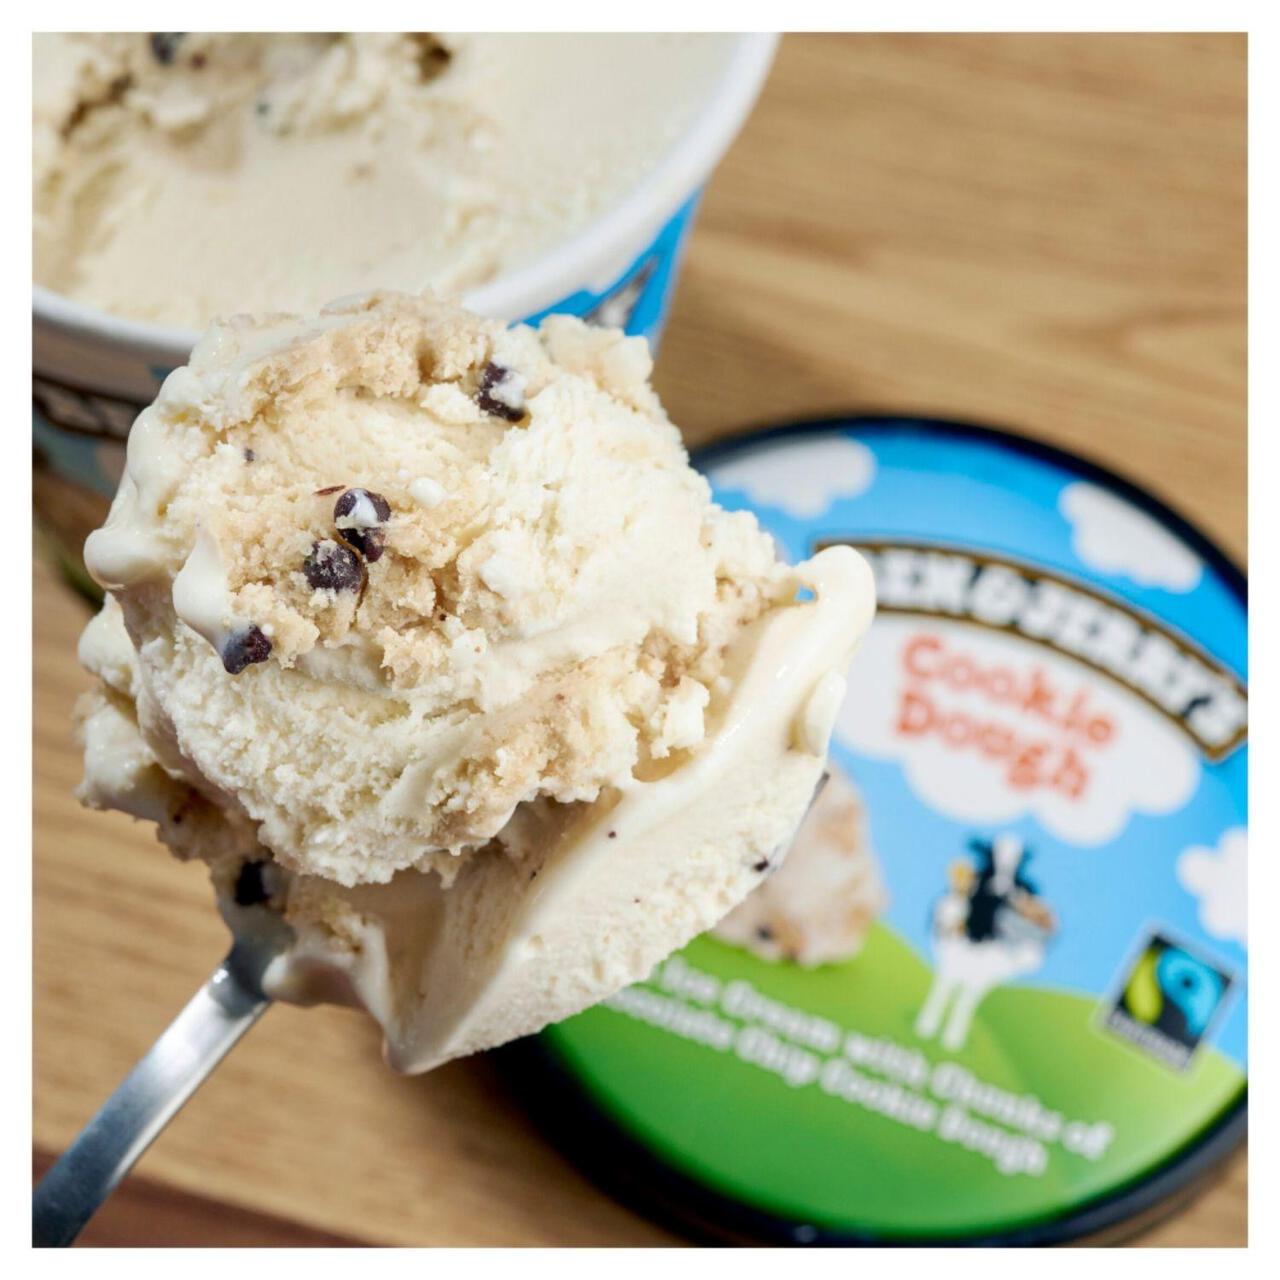 Ben & Jerry's Cookie Dough Vanilla Ice Cream Tub 465ml